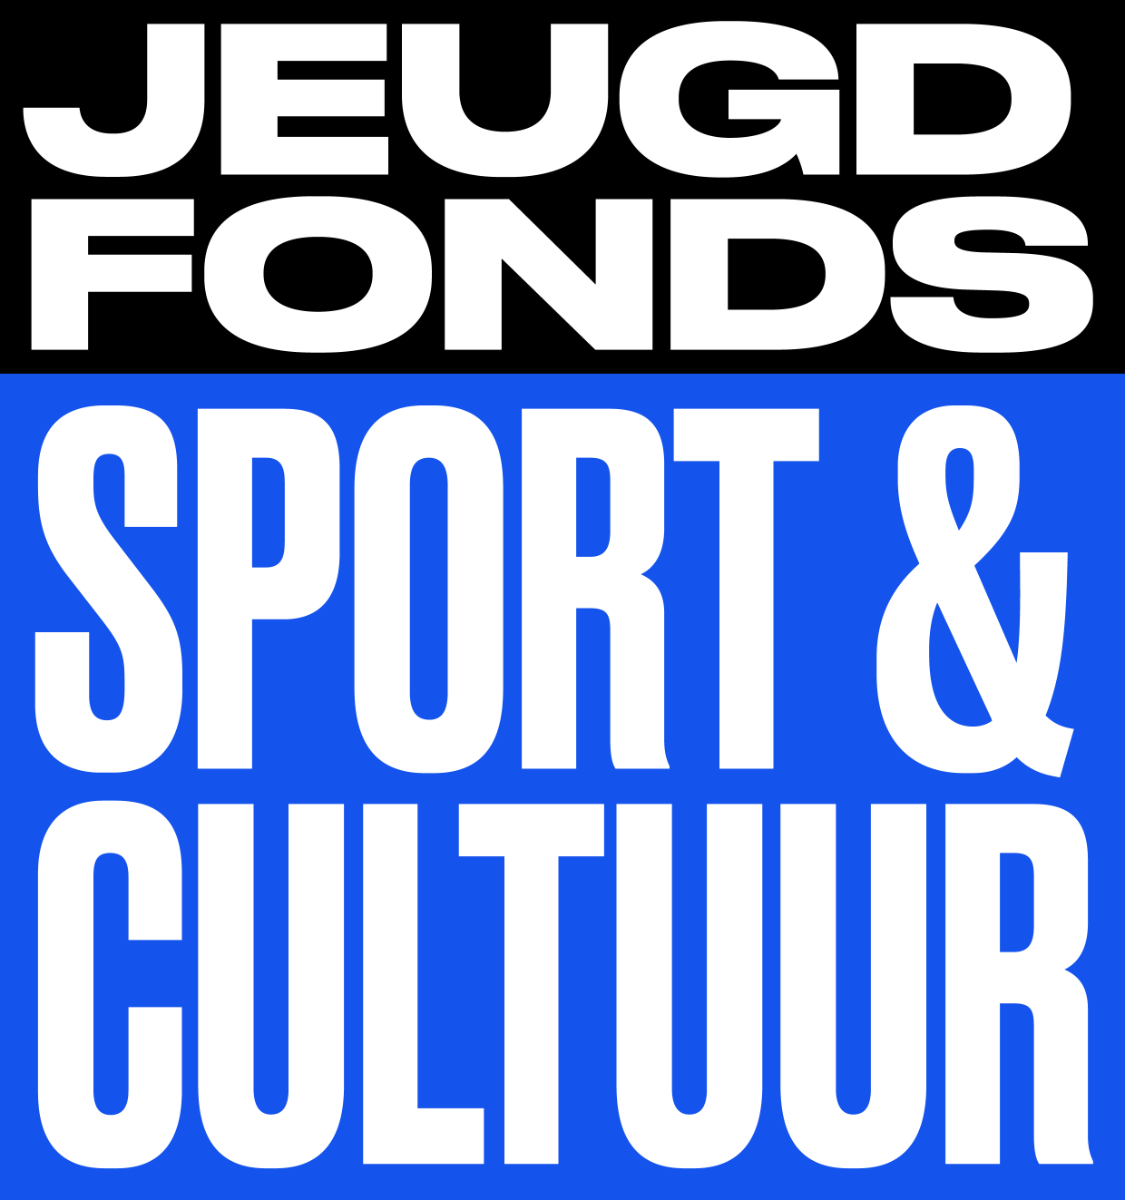 Bericht Jeugdfonds Sport & Cultuur - Herhaal de aanvraag! bekijken